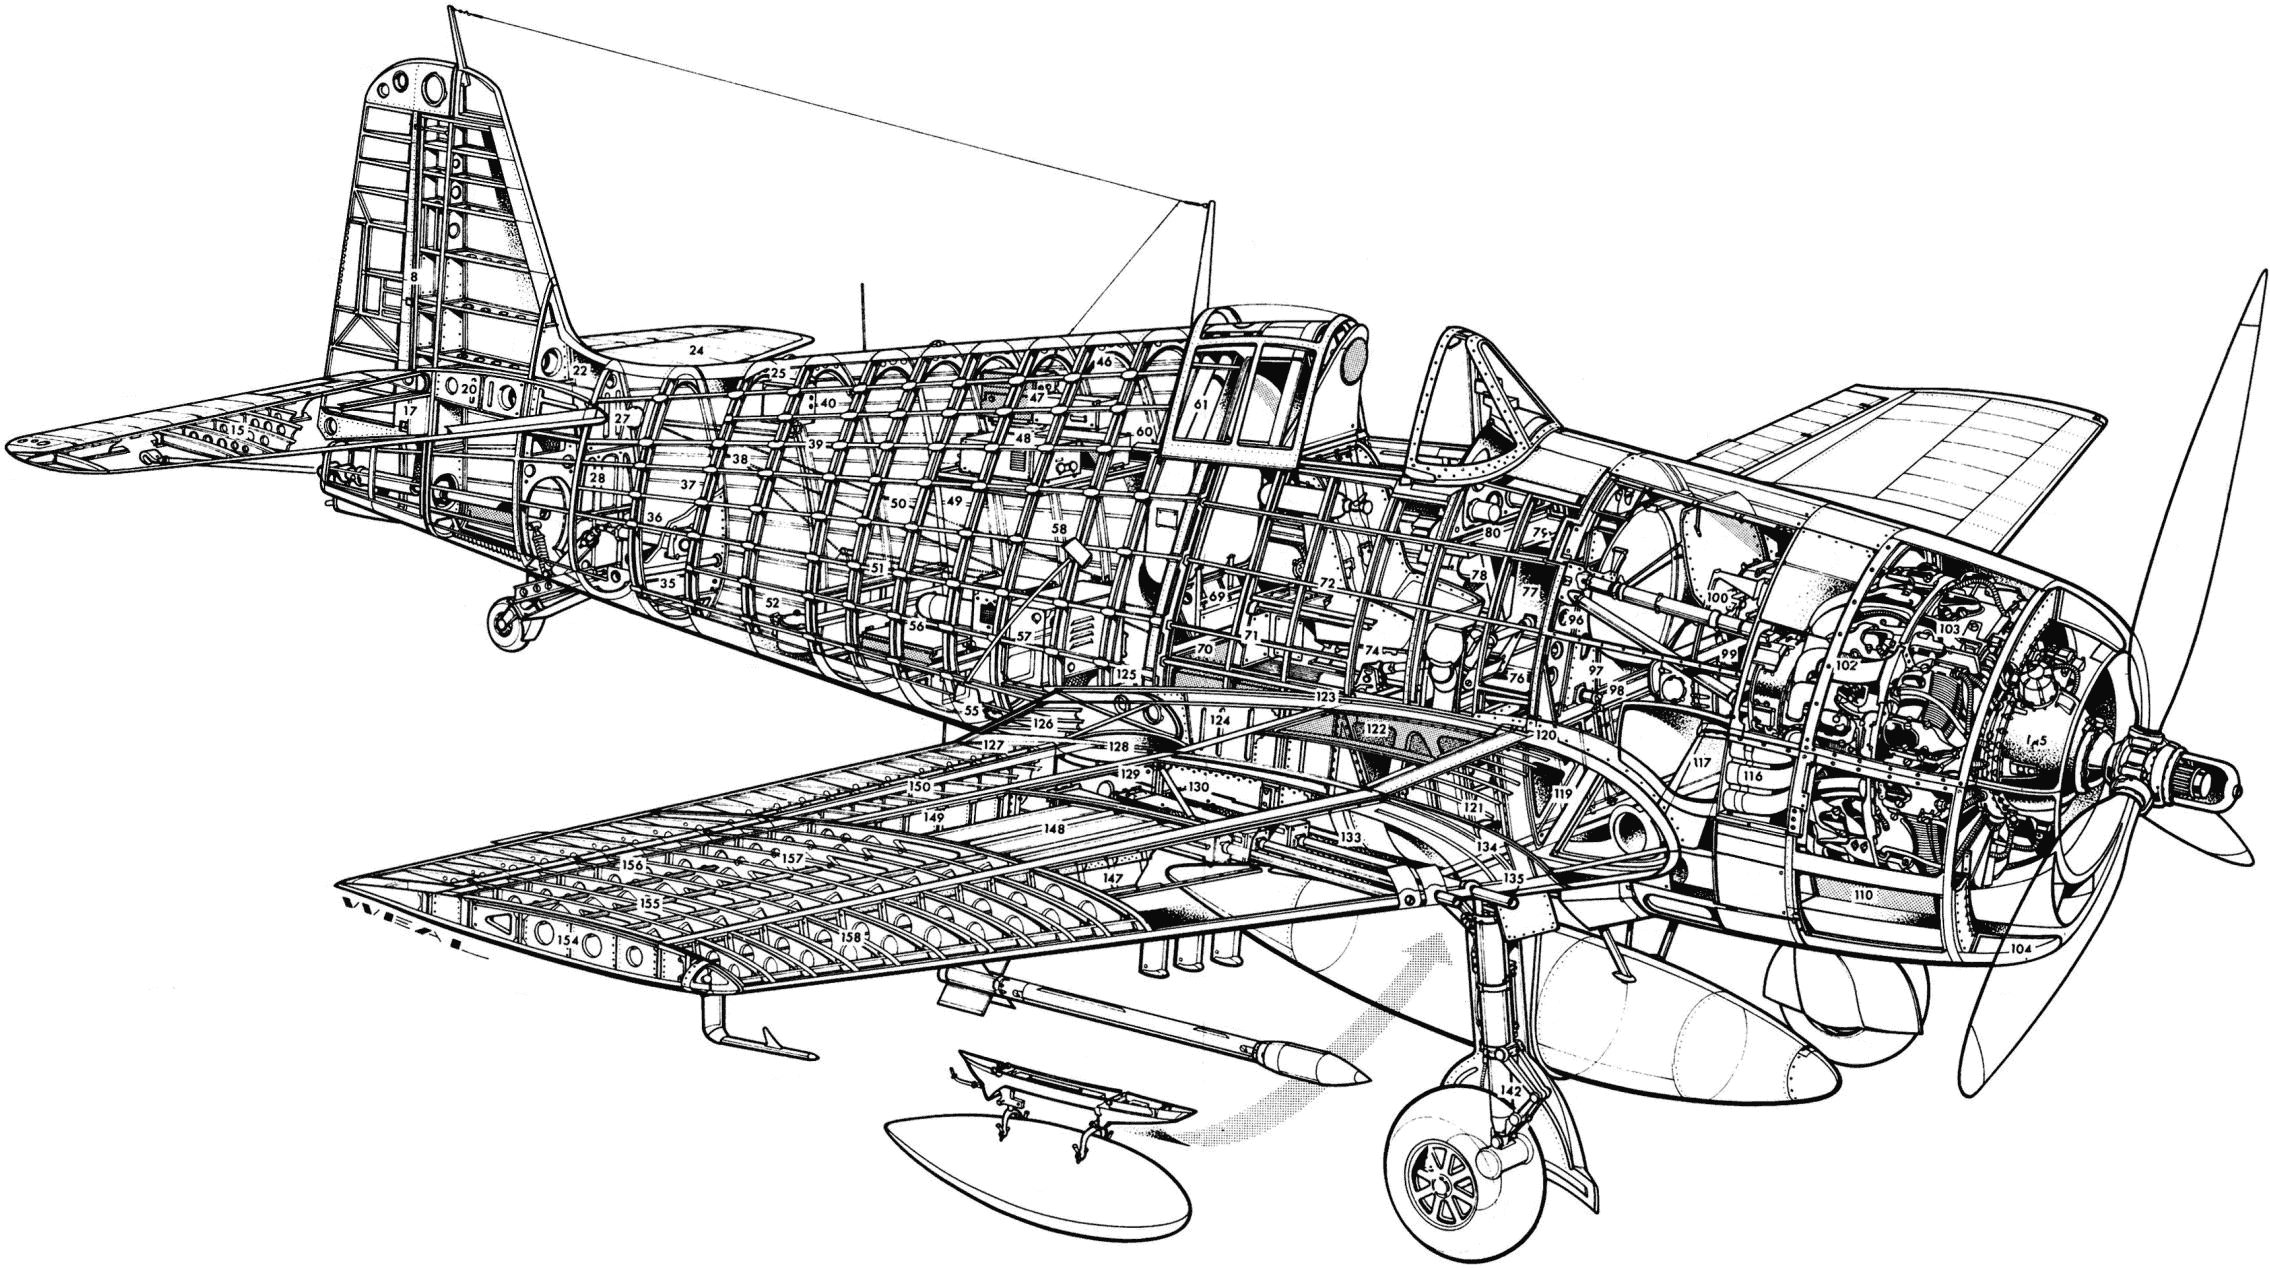 Grumman F6F Hellcat cutaway drawing